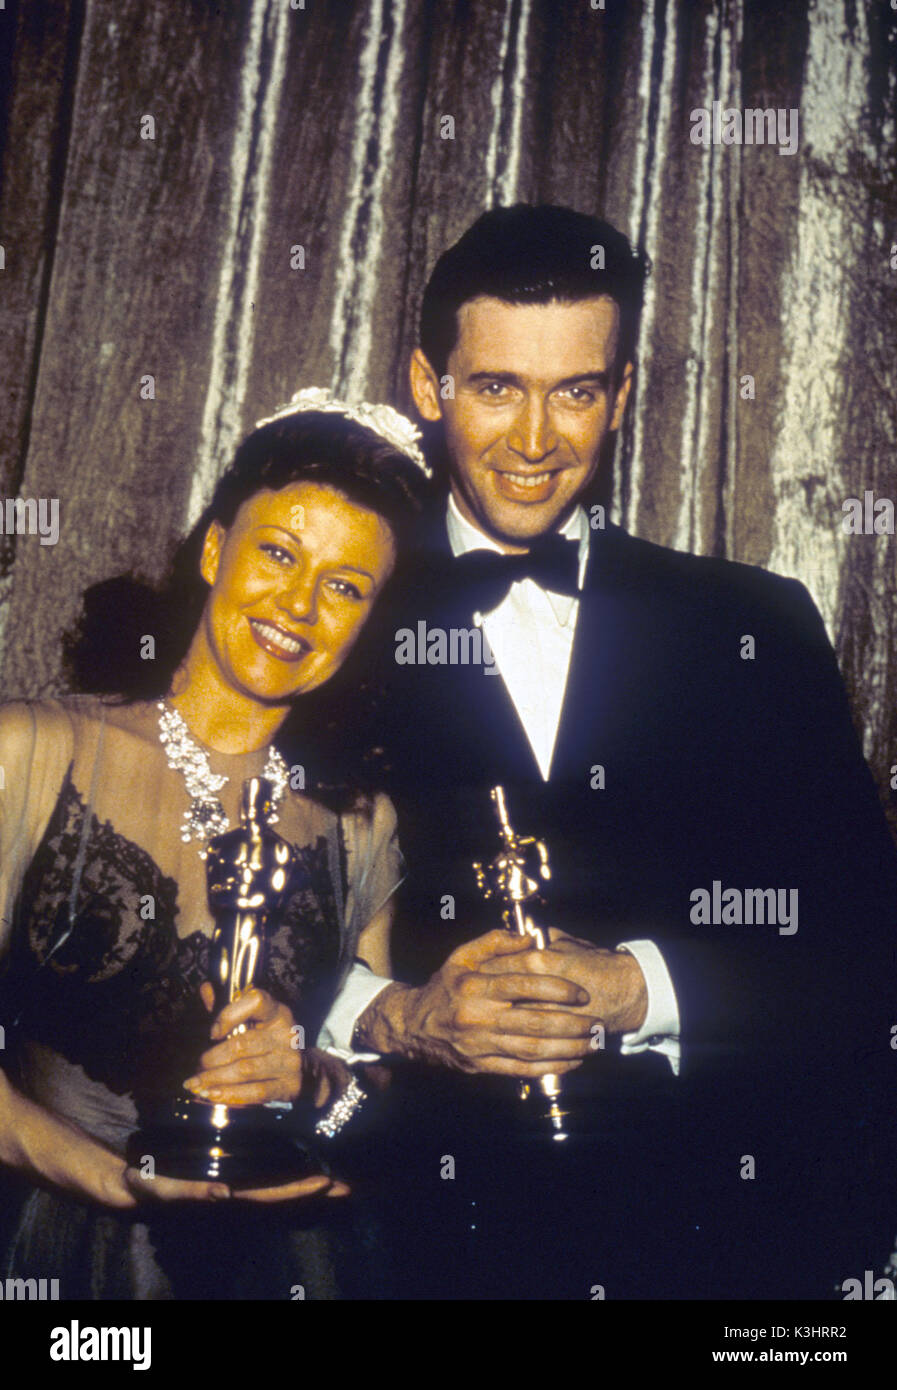 Ceremonia de los Premios de la Academia 1940 Oscar a la mejor actriz de reparto - Ginger Rogers en Kitty Foyle Oscar a mejor actor - James Stewart en el Philadelphia Story Foto de stock